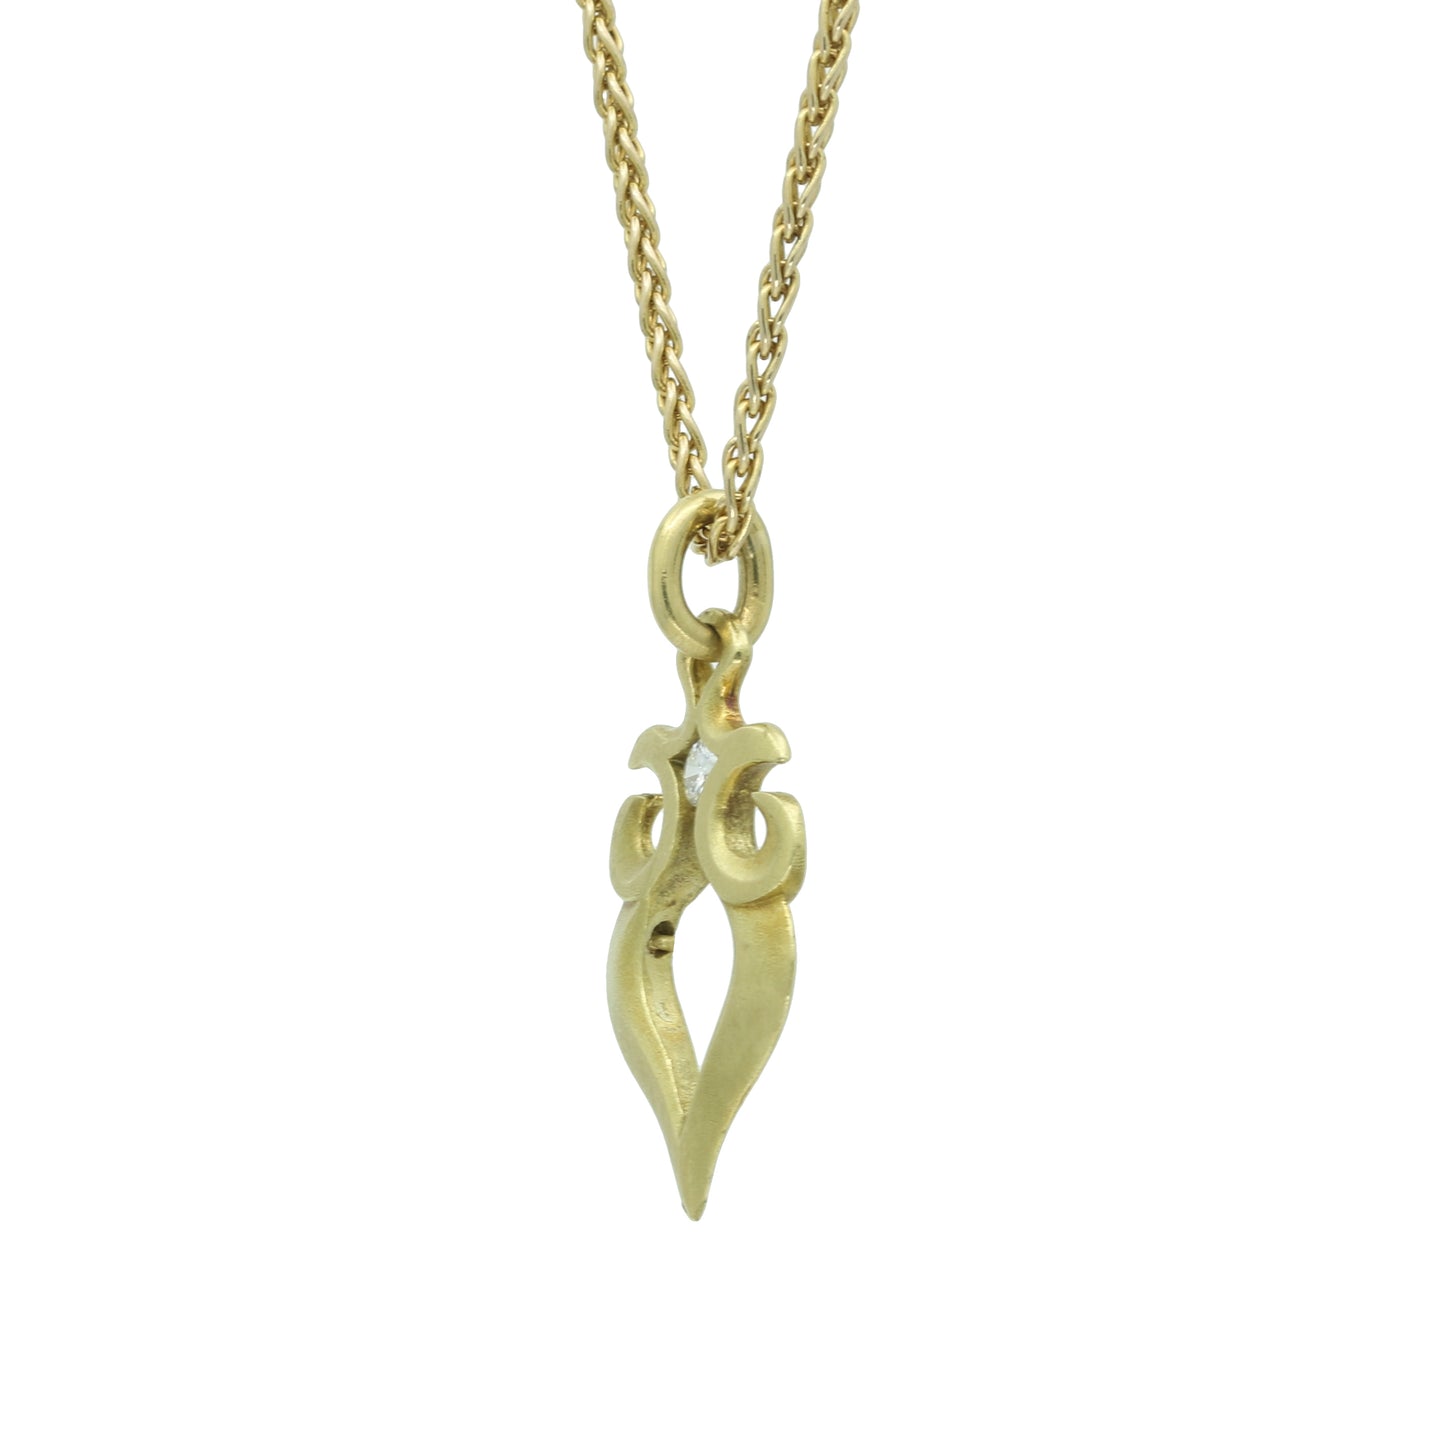 Stylish and Modern Diamond Pendant Necklace 18k 14k Yellow Gold